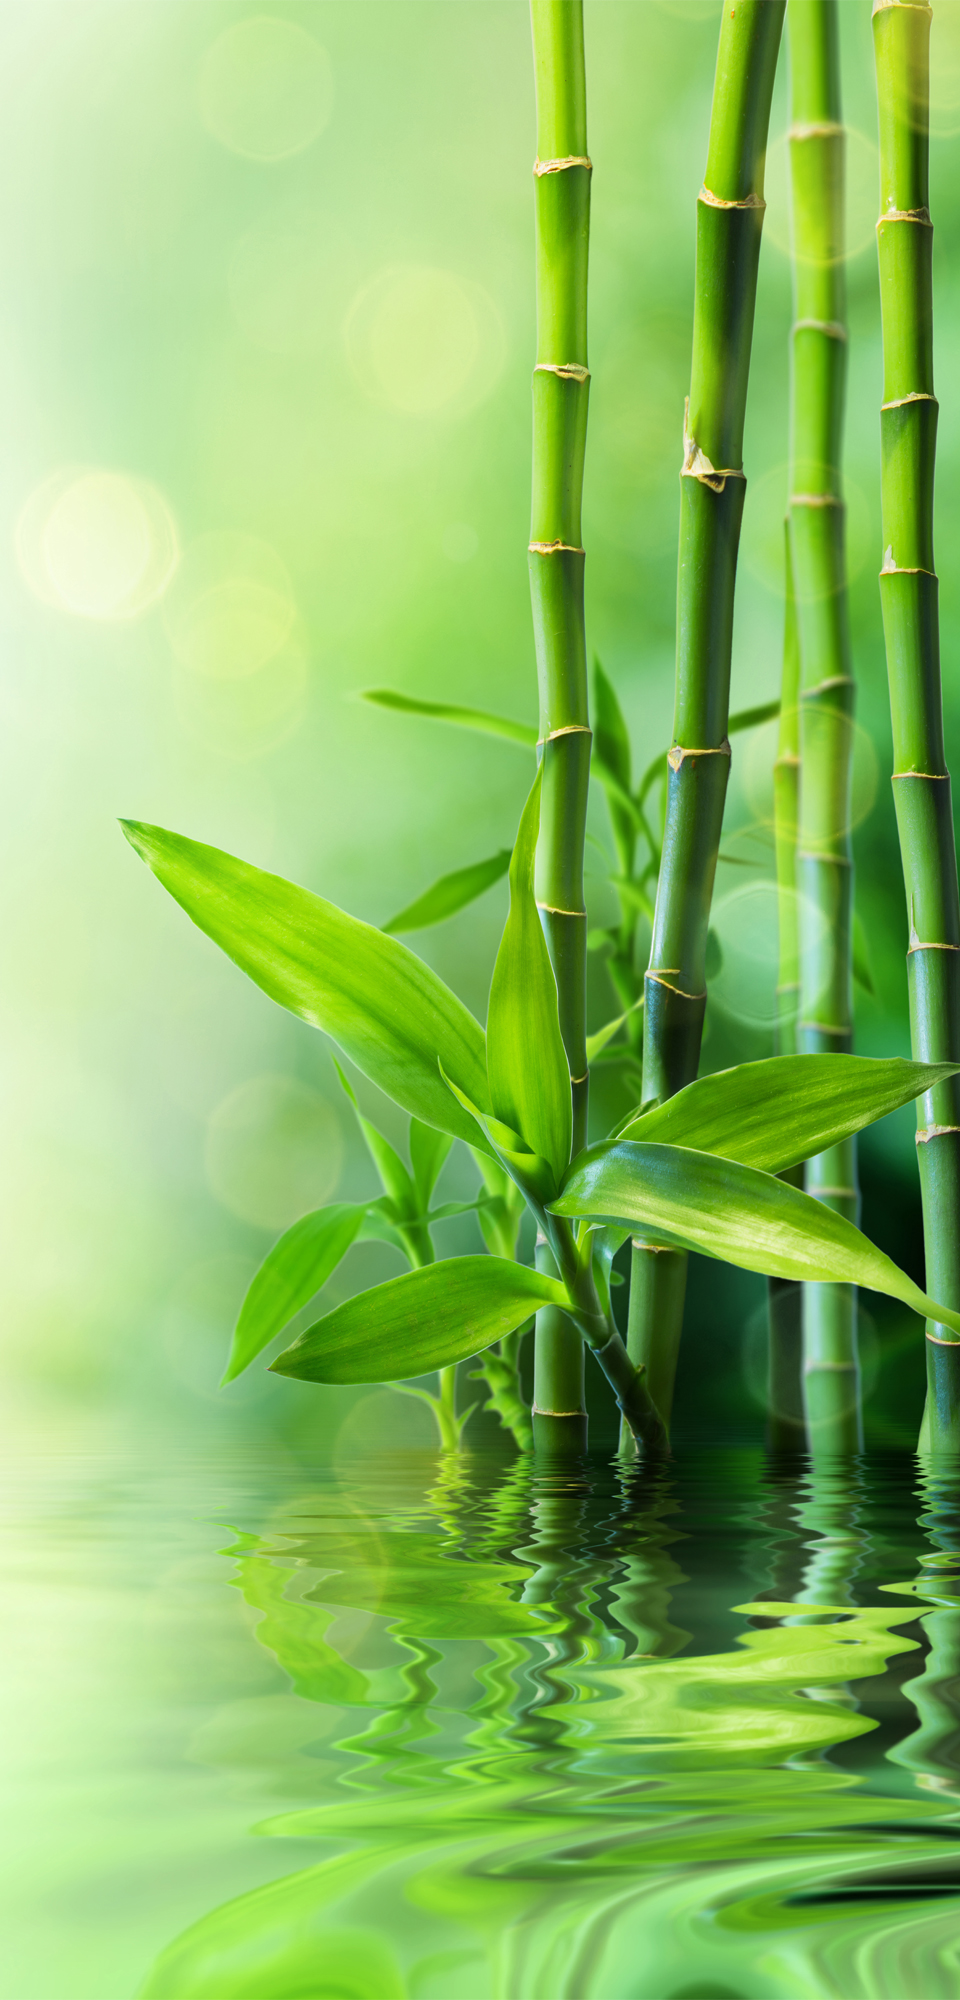 splashback - grüner Bambus im Wasser - preloading